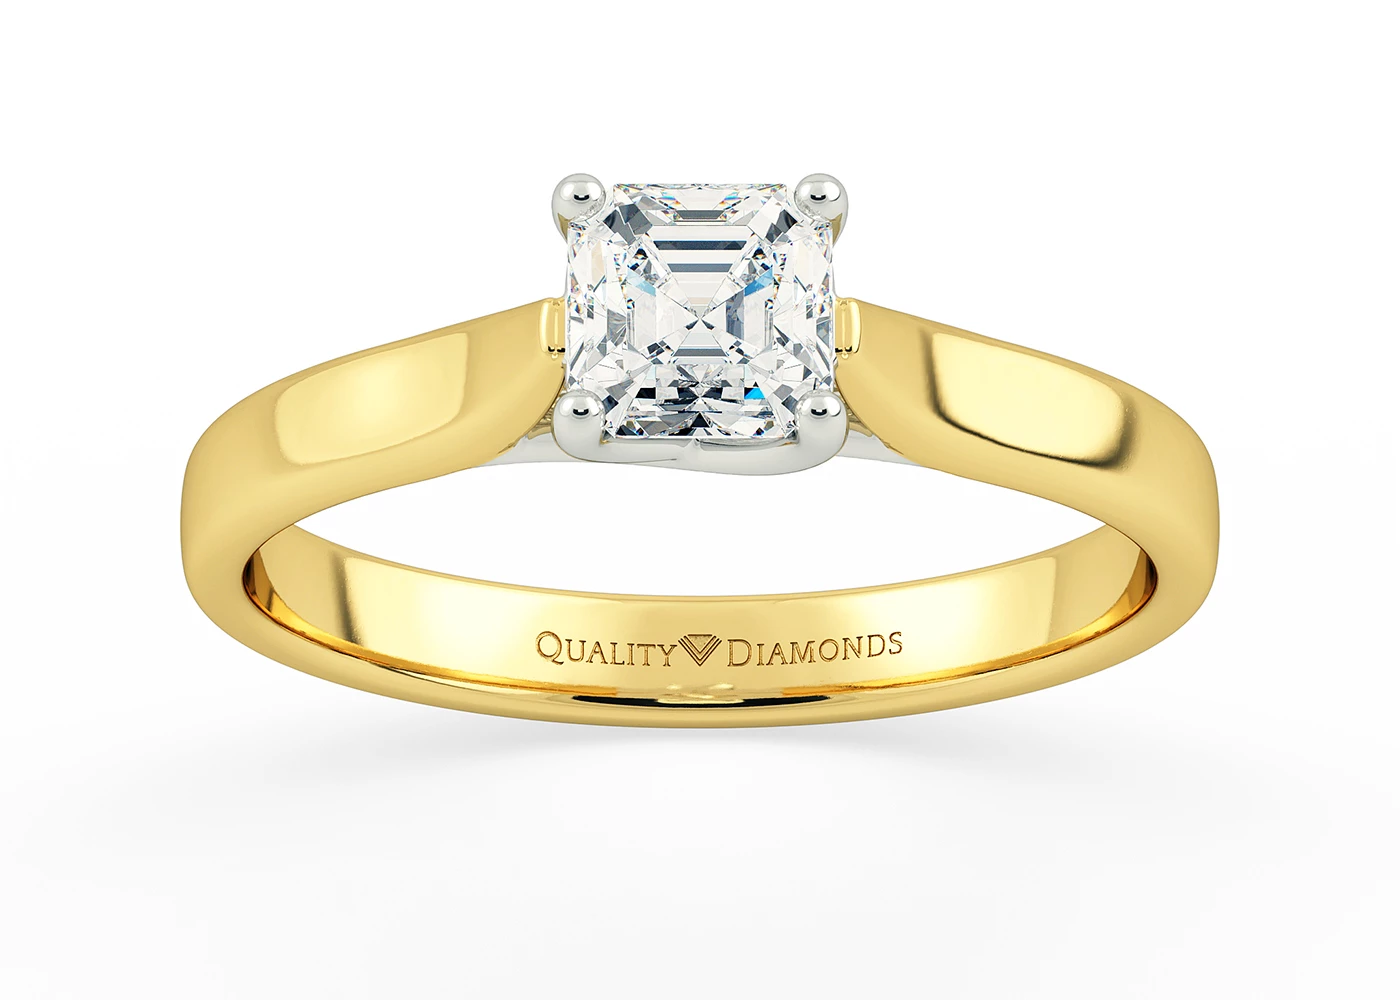 Asscher Mirabelle Diamond Ring in 9K Yellow Gold